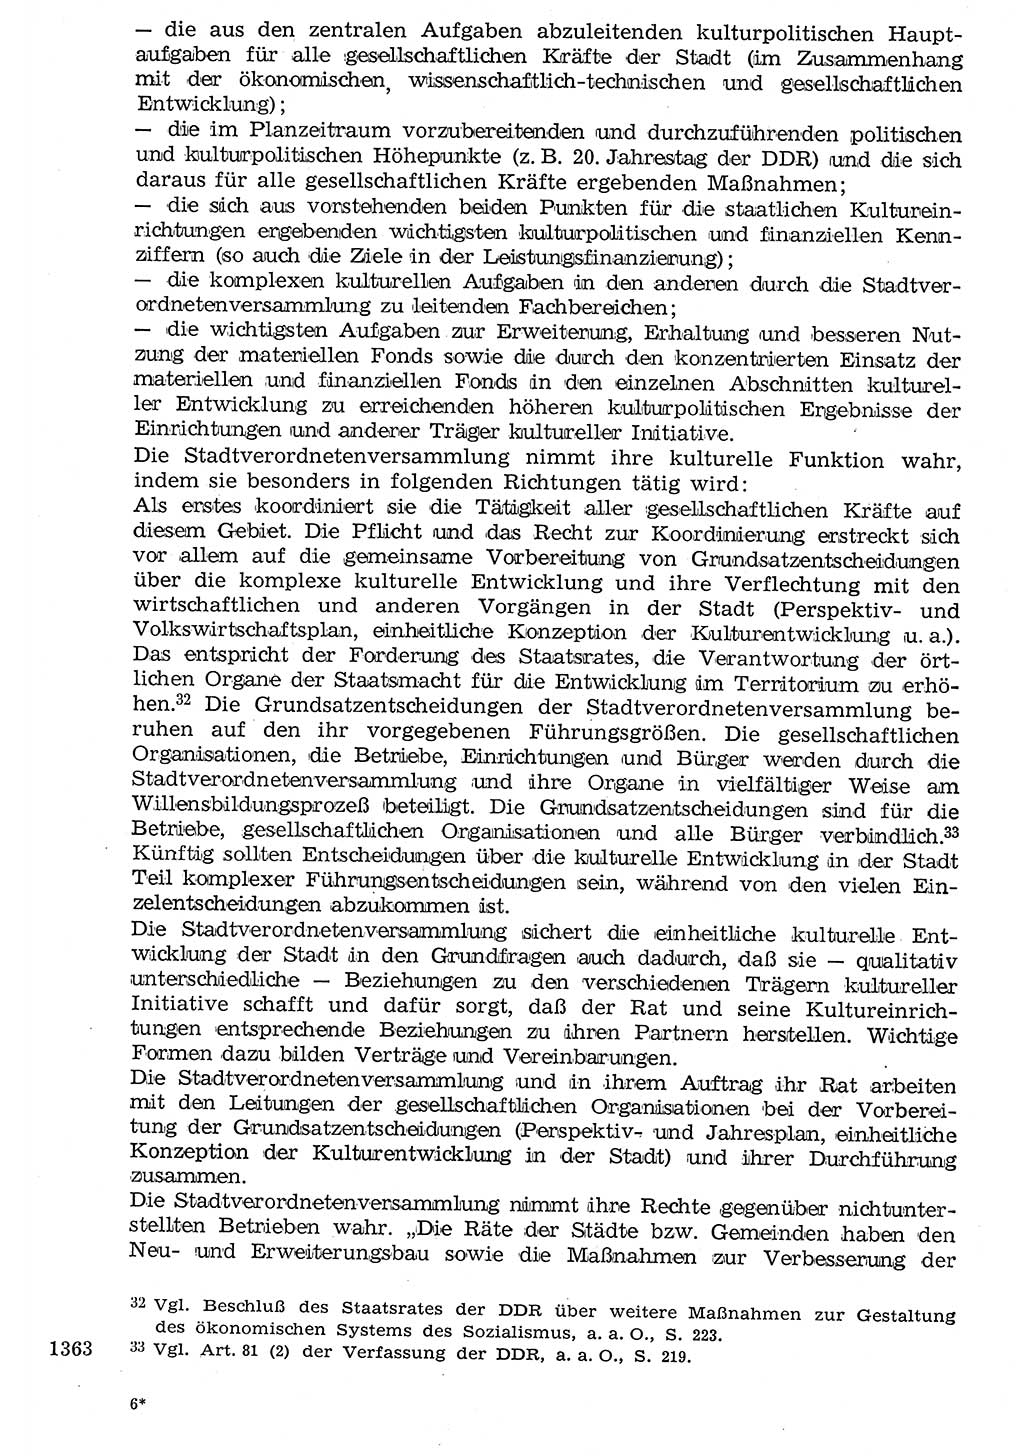 Staat und Recht (StuR), 17. Jahrgang [Deutsche Demokratische Republik (DDR)] 1968, Seite 1363 (StuR DDR 1968, S. 1363)